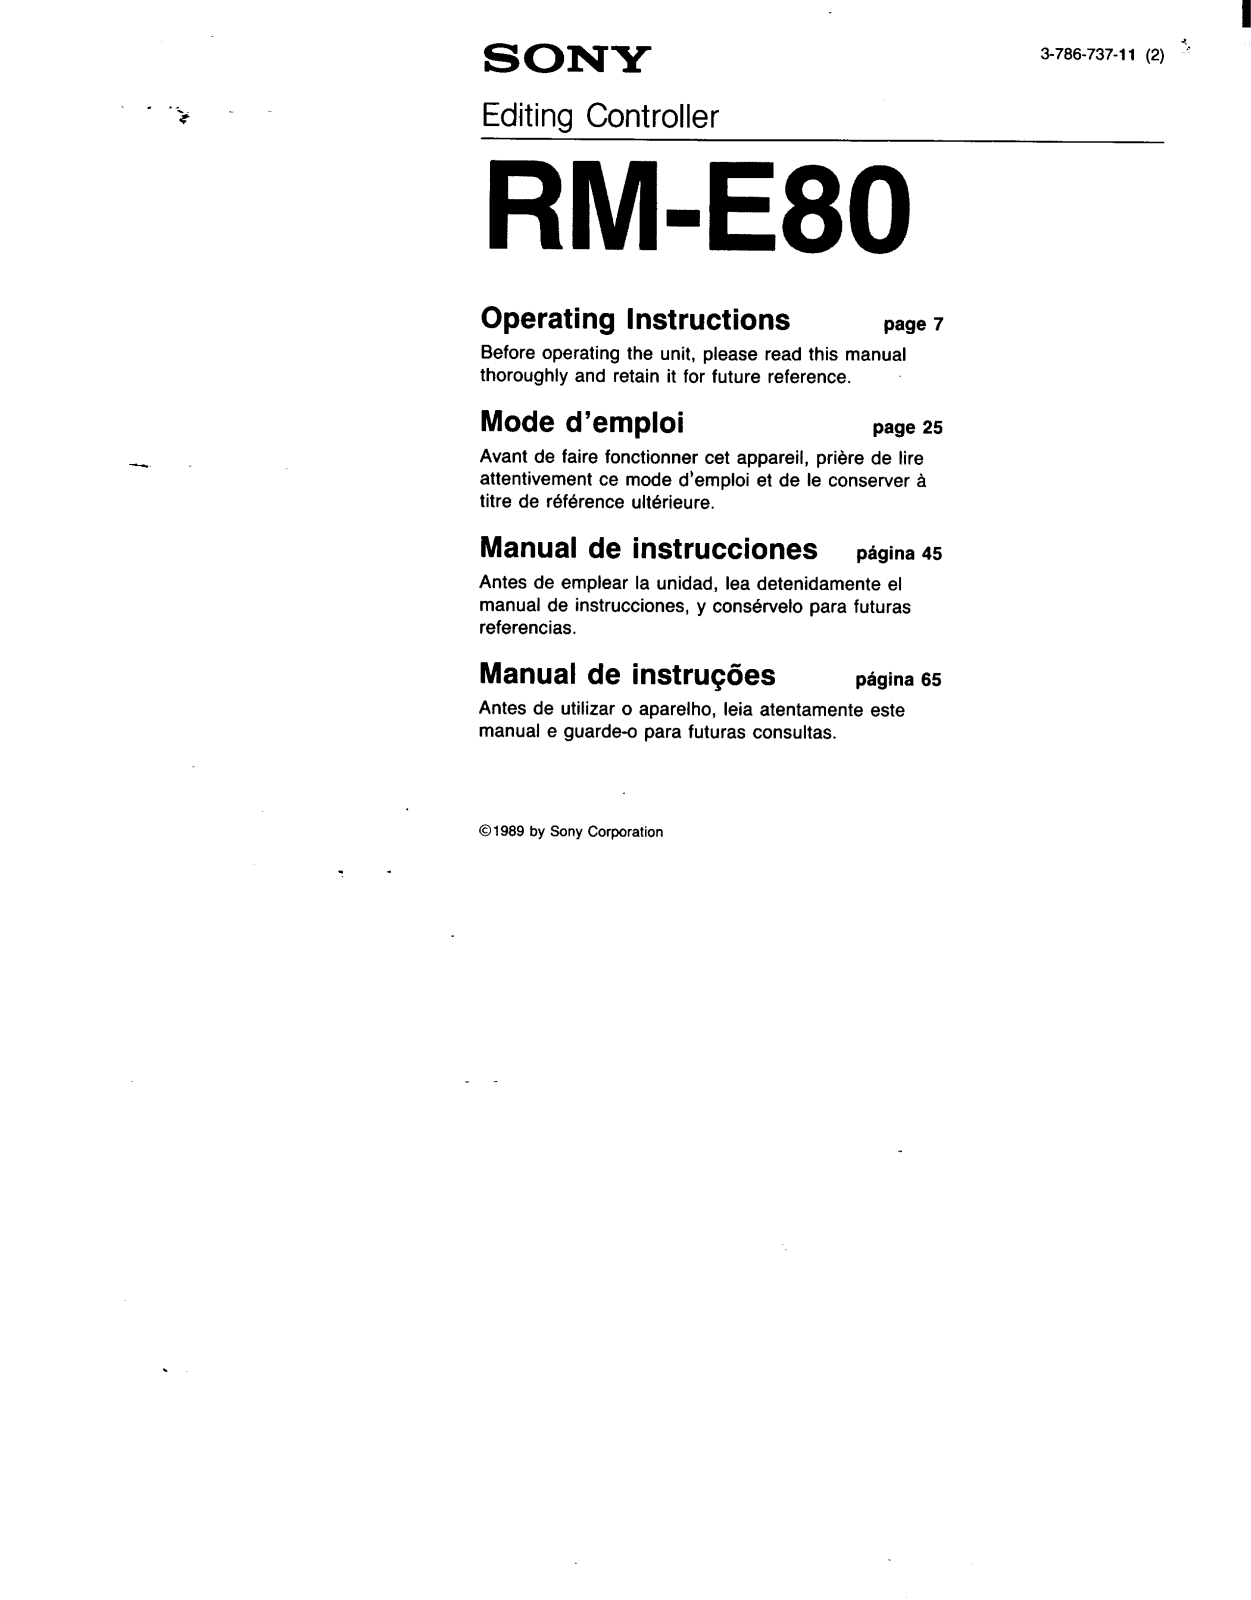 Sony RM-E80 Operating Manual